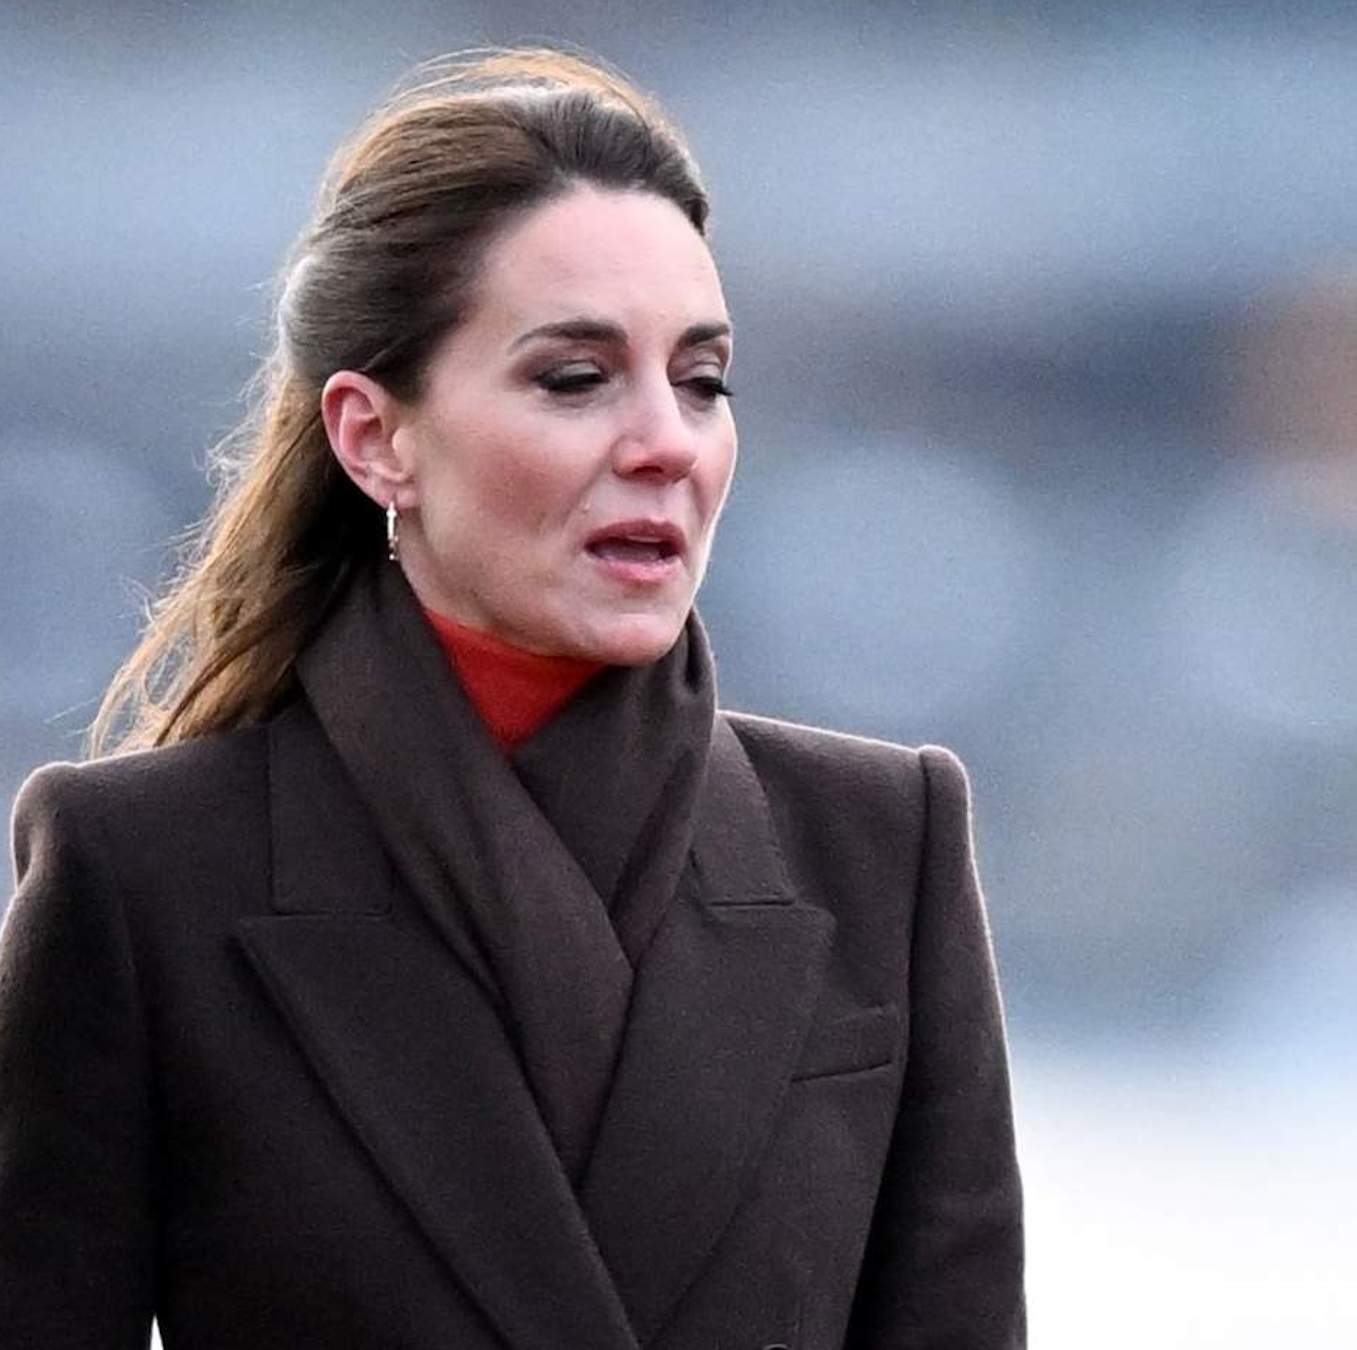 Kate Middleton reaparece con una decisión radical, sorpresa en el Reino Unido